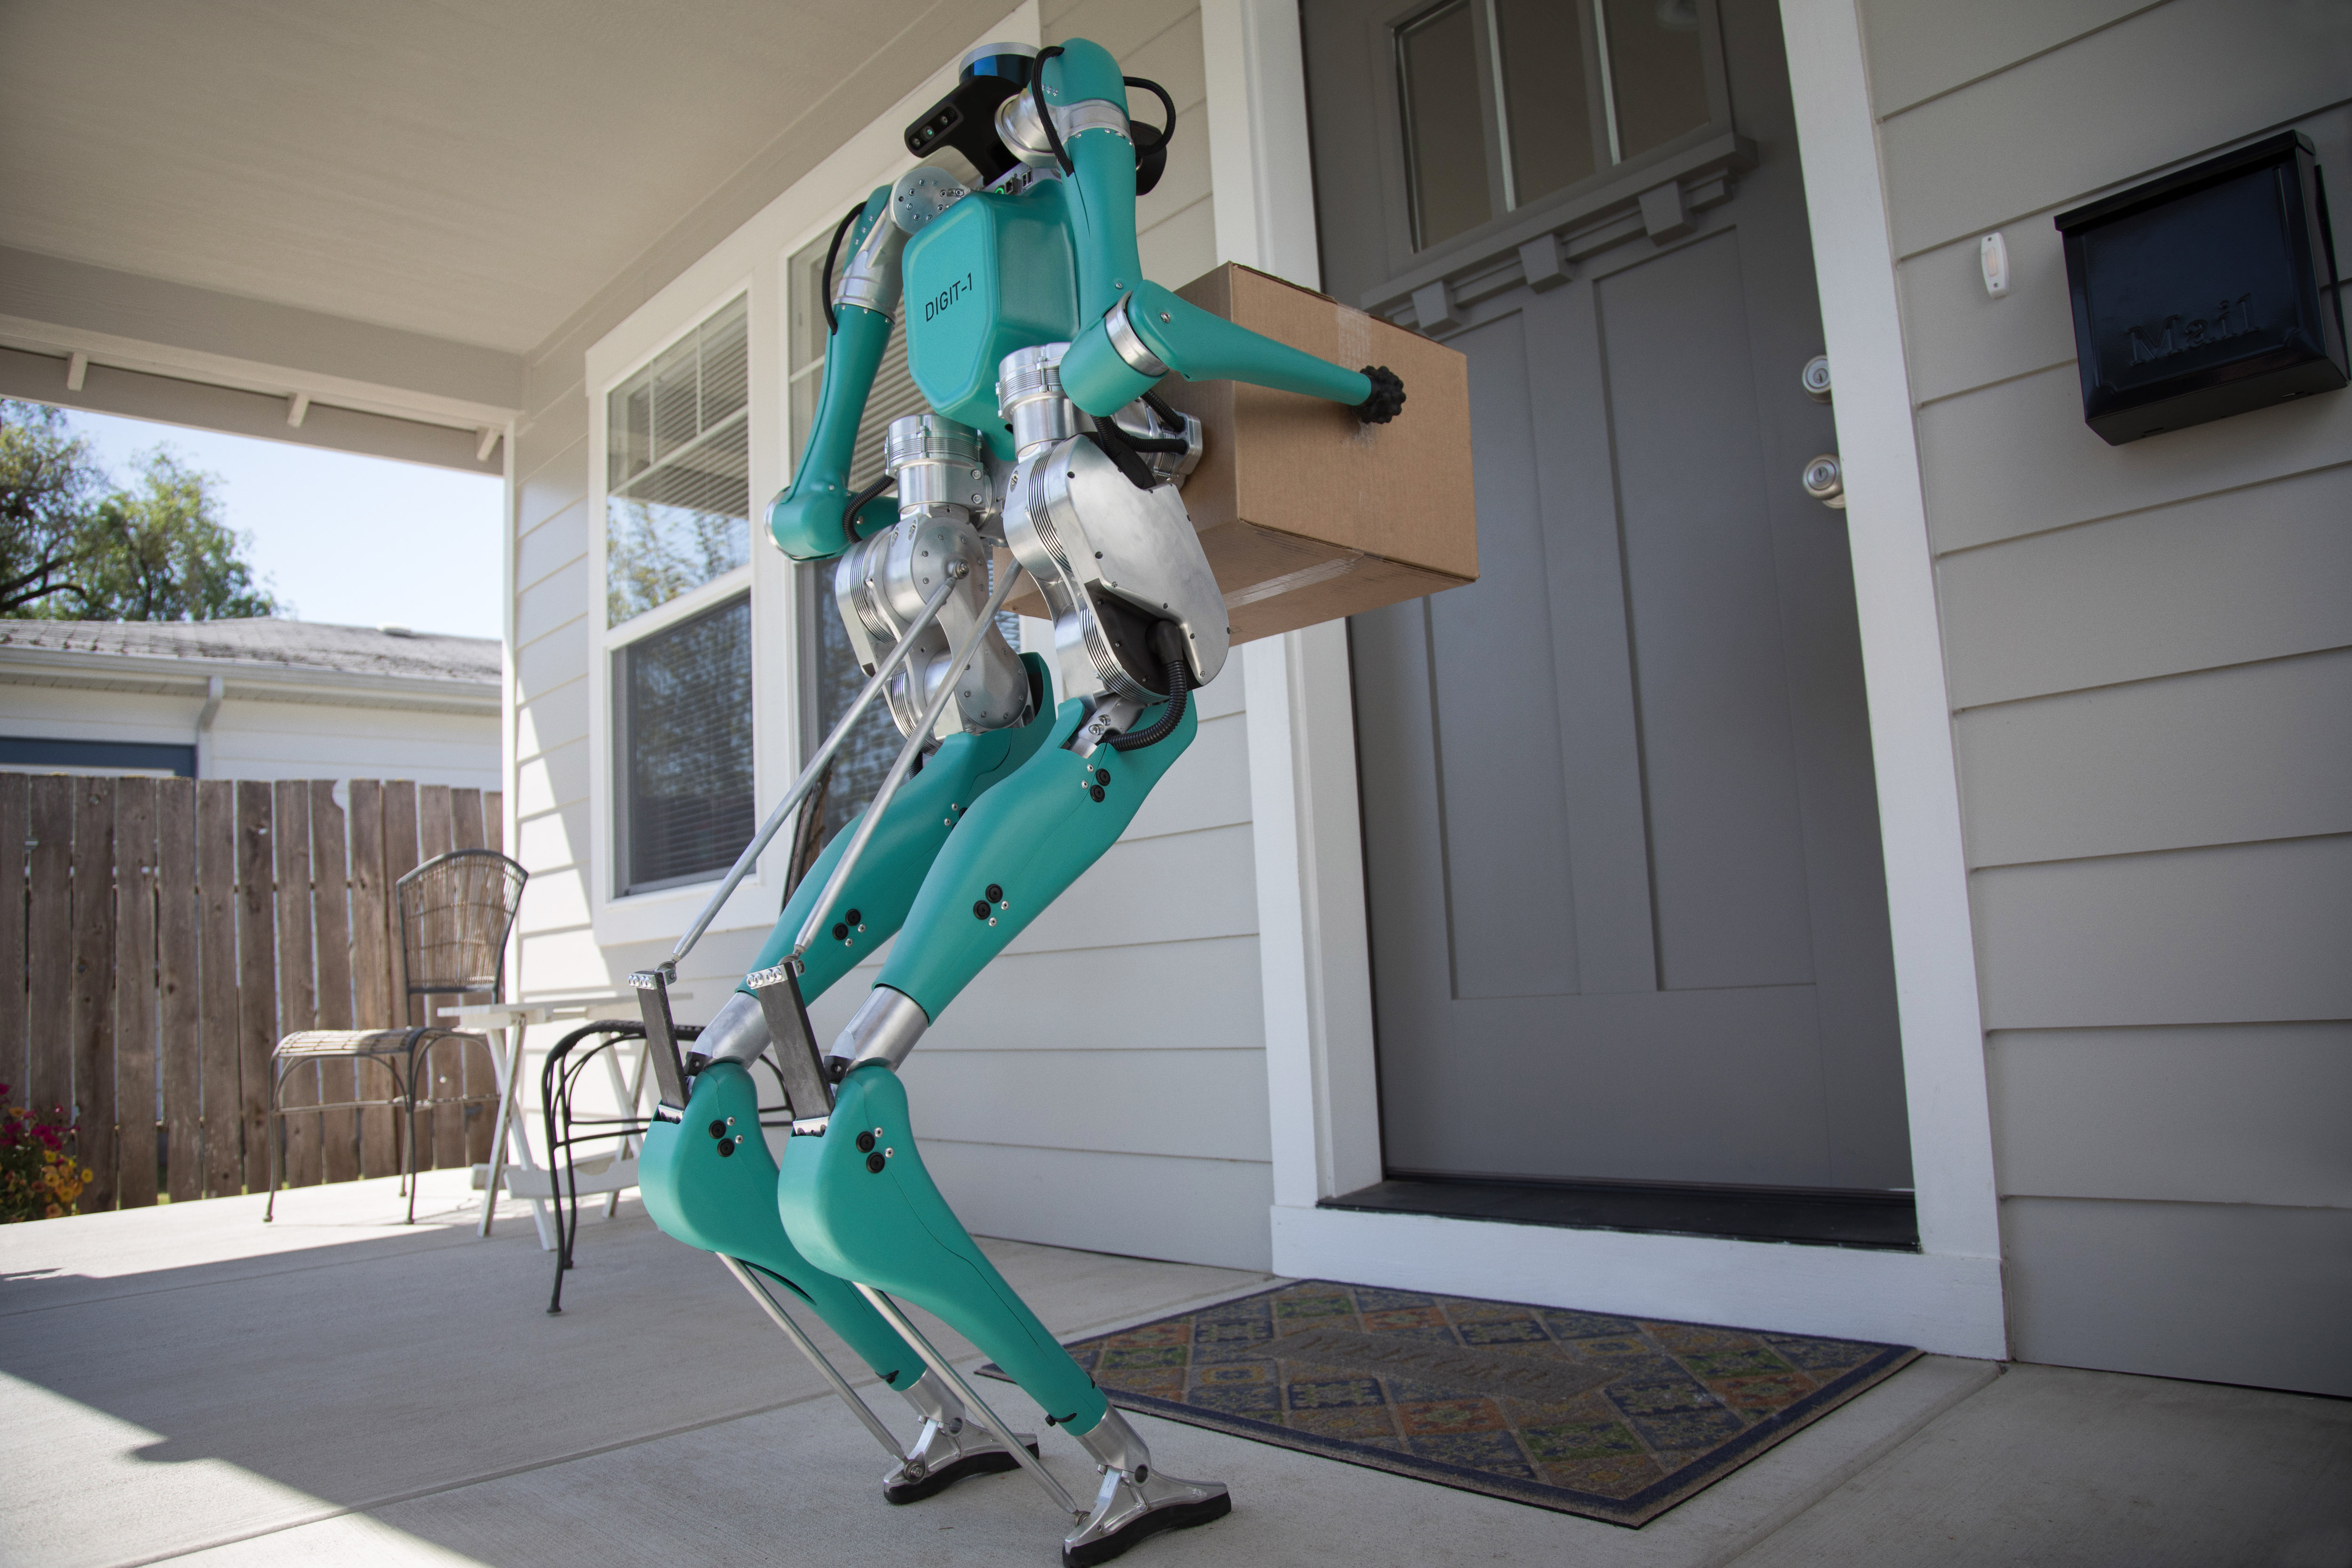 ein roboter als postbote ford und agility robotics erforschen die autonome auslieferung von waren - Ein Roboter als Postbote: Ford und Agility Robotics erforschen die autonome Auslieferung von Waren